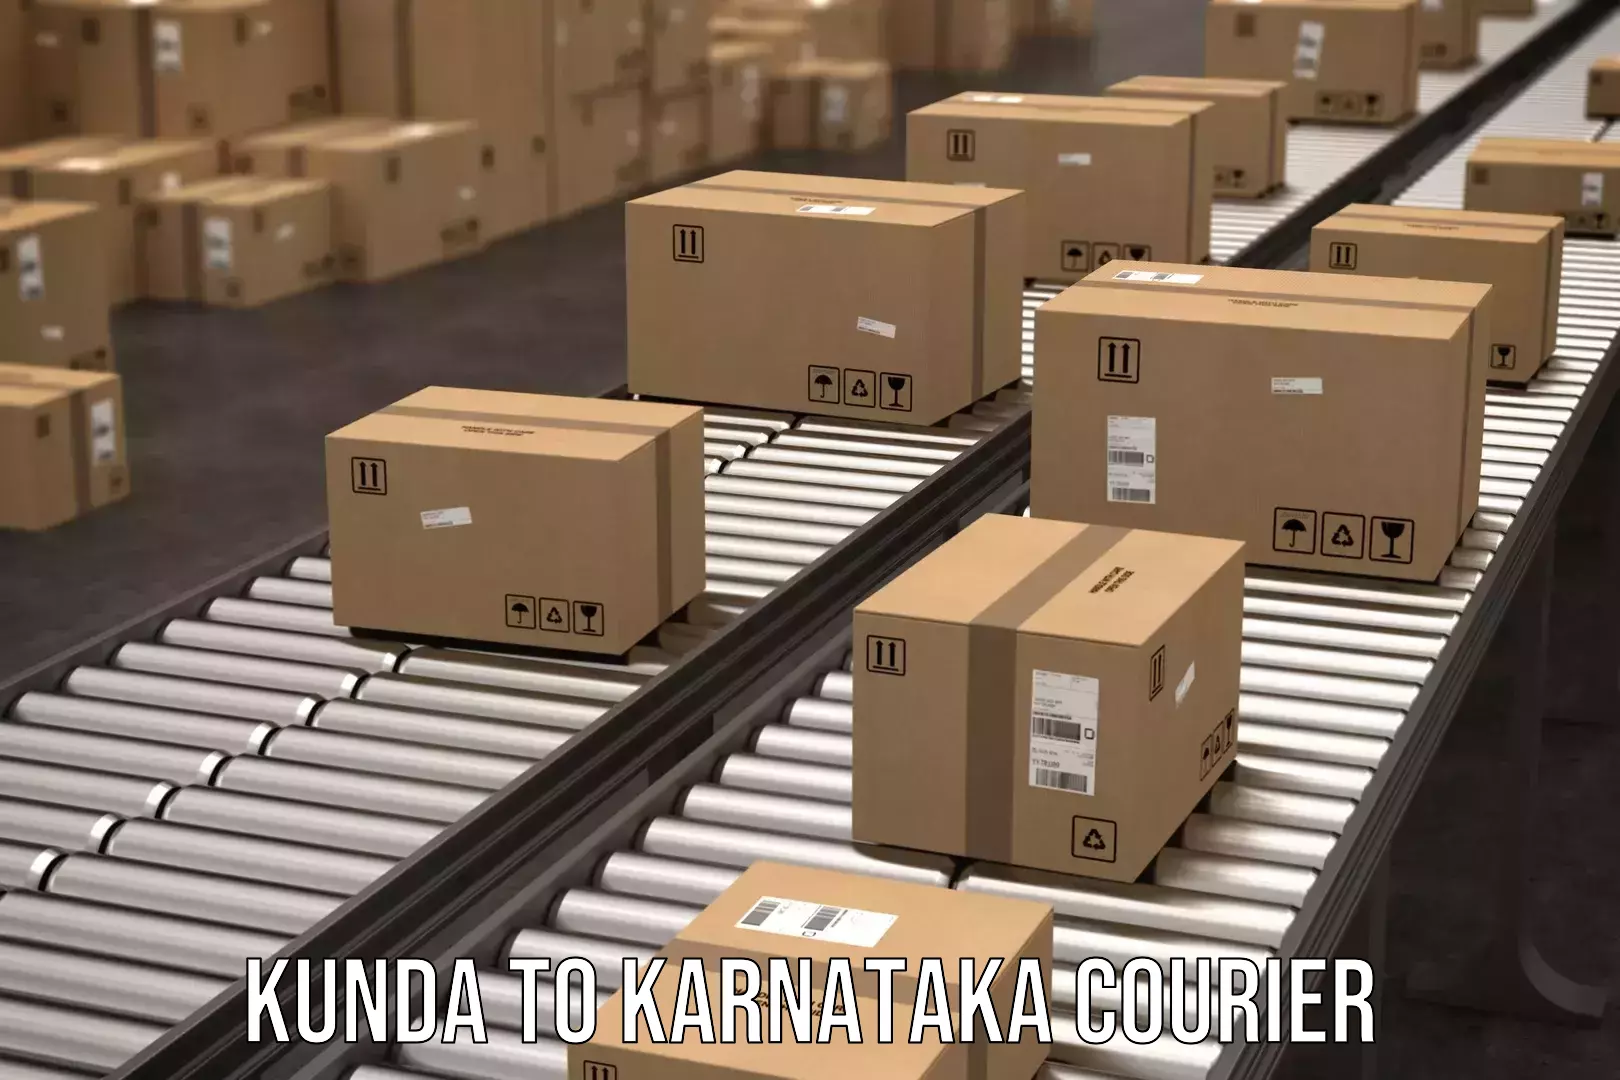 Online package tracking Kunda to Karnataka